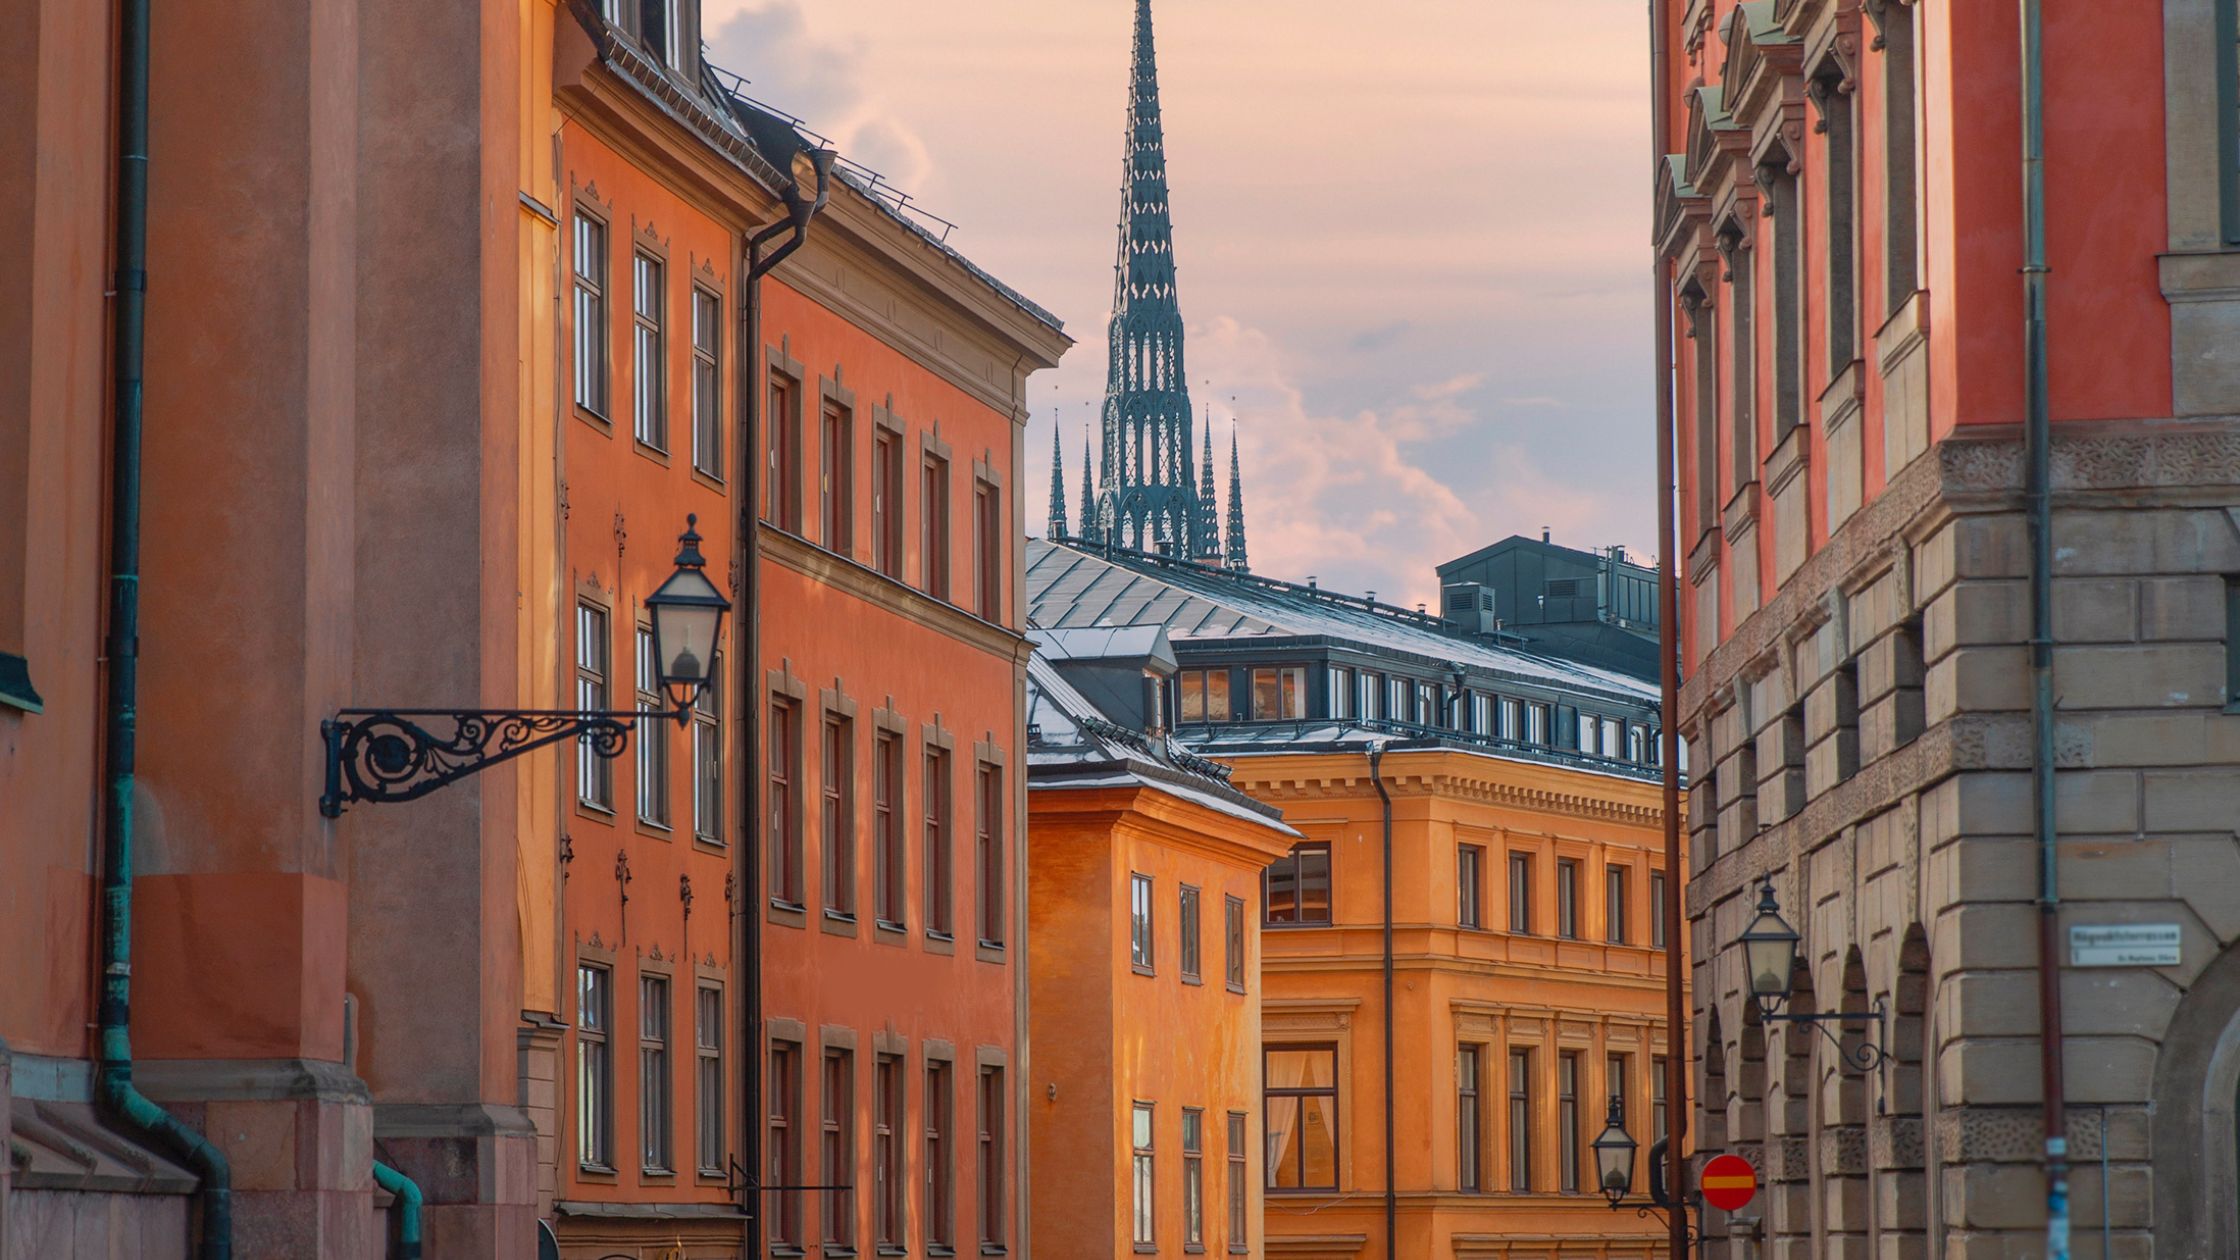 en klassisk gata i stockholms gamla stad med hur var sida i röda till gula nyanser